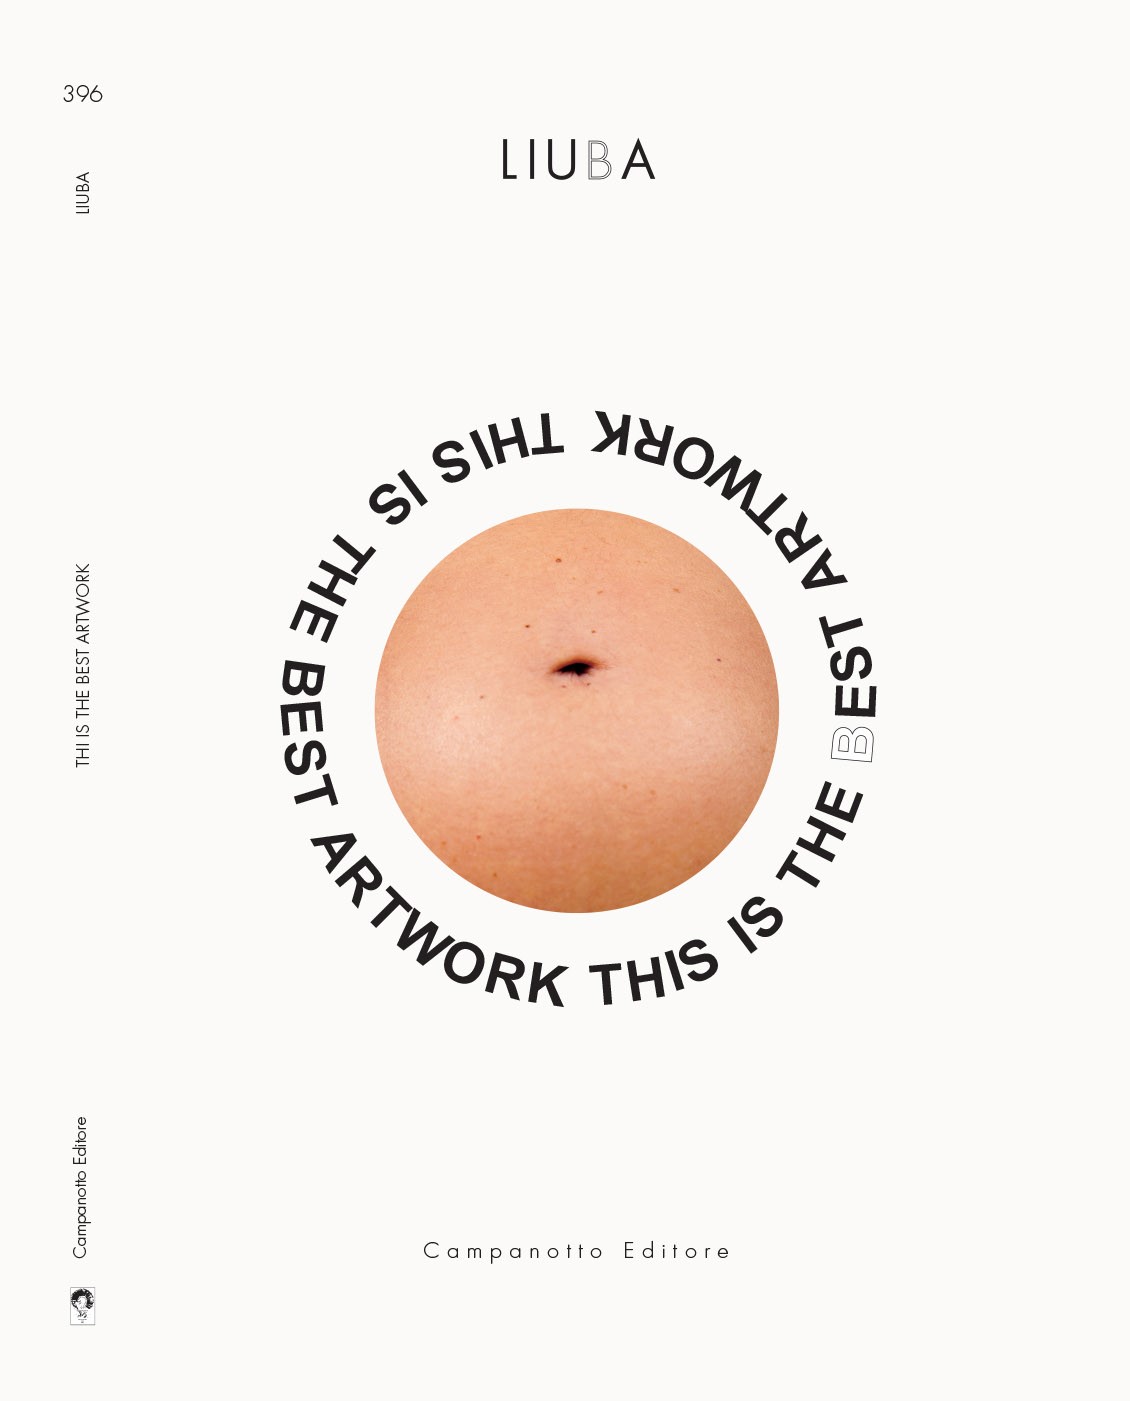 Copertina del libro LIUBA, This is the Best Artwork, Campanotto Editore, 2023. (Design: LIUBA, Emiliano Biondelli)